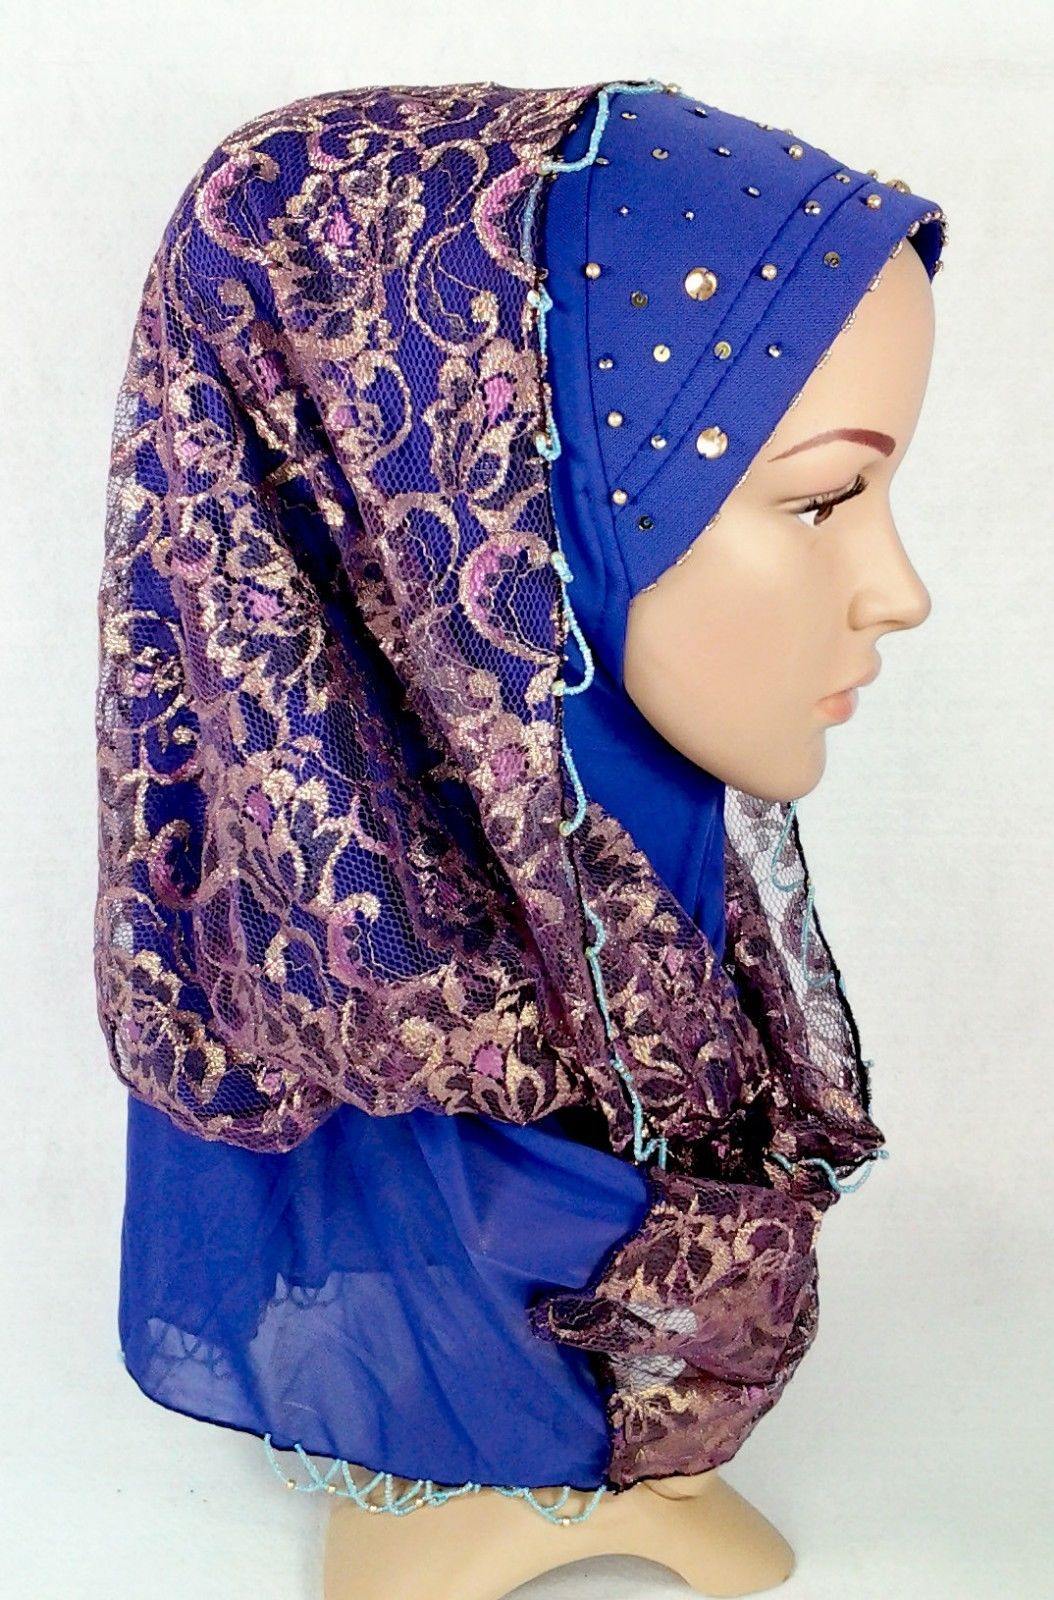 New Lace NET Yarn RhineStone Elegant Loop Hijab Islamic Headwear Scarf Shawls - Arabian Shopping Zone